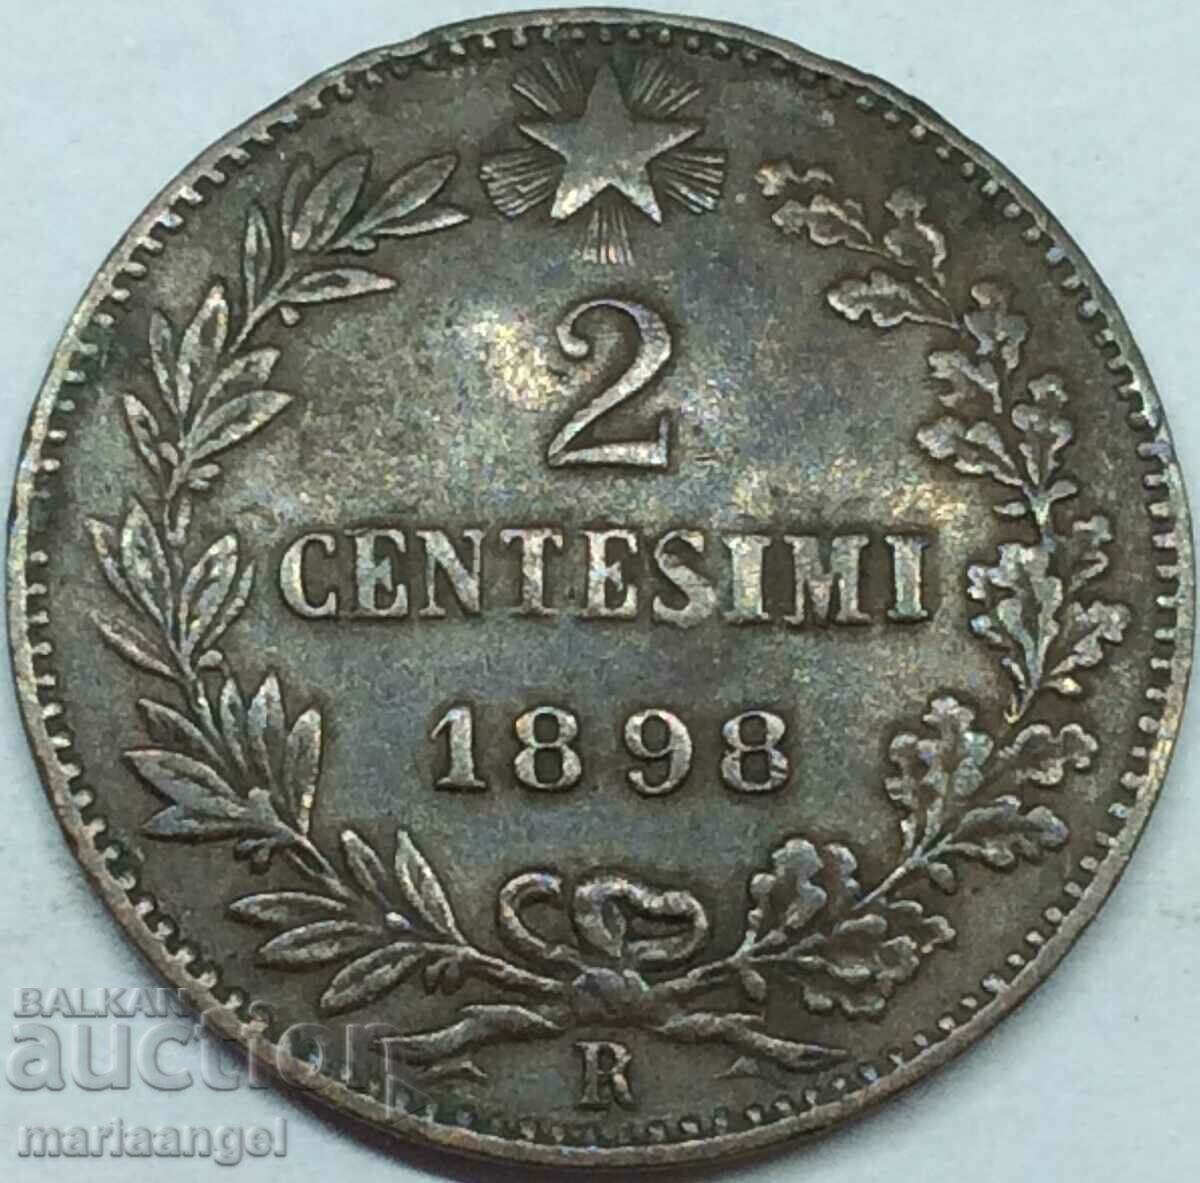 2 Centesimi 1898 Italy King Umberto I